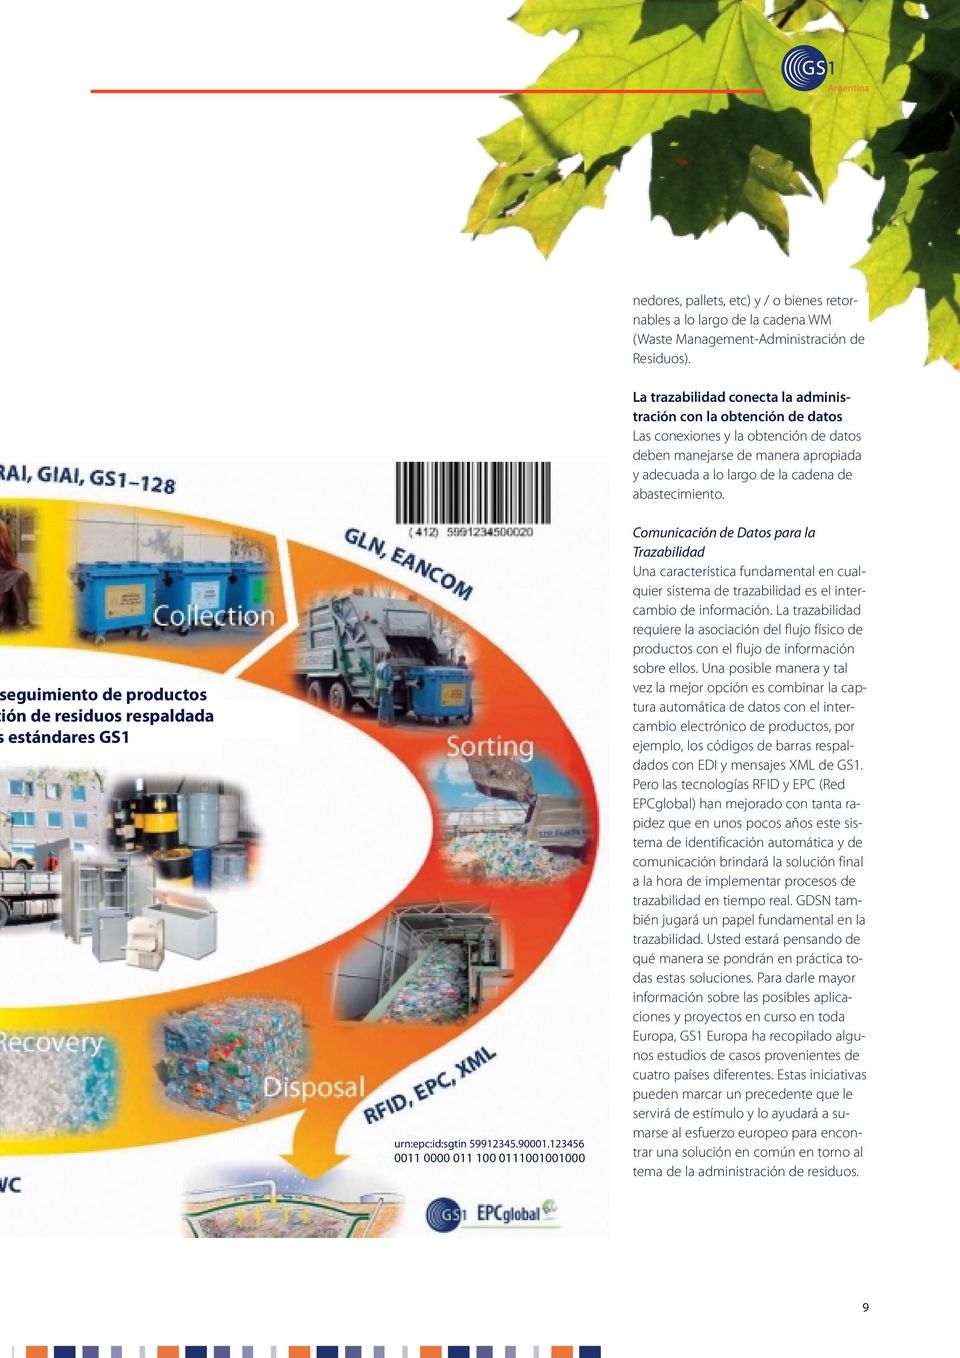 eguimiento de productos ión de residuos respaldada estándares GS1 urn:epc:id:sgtin 59912345.90001.